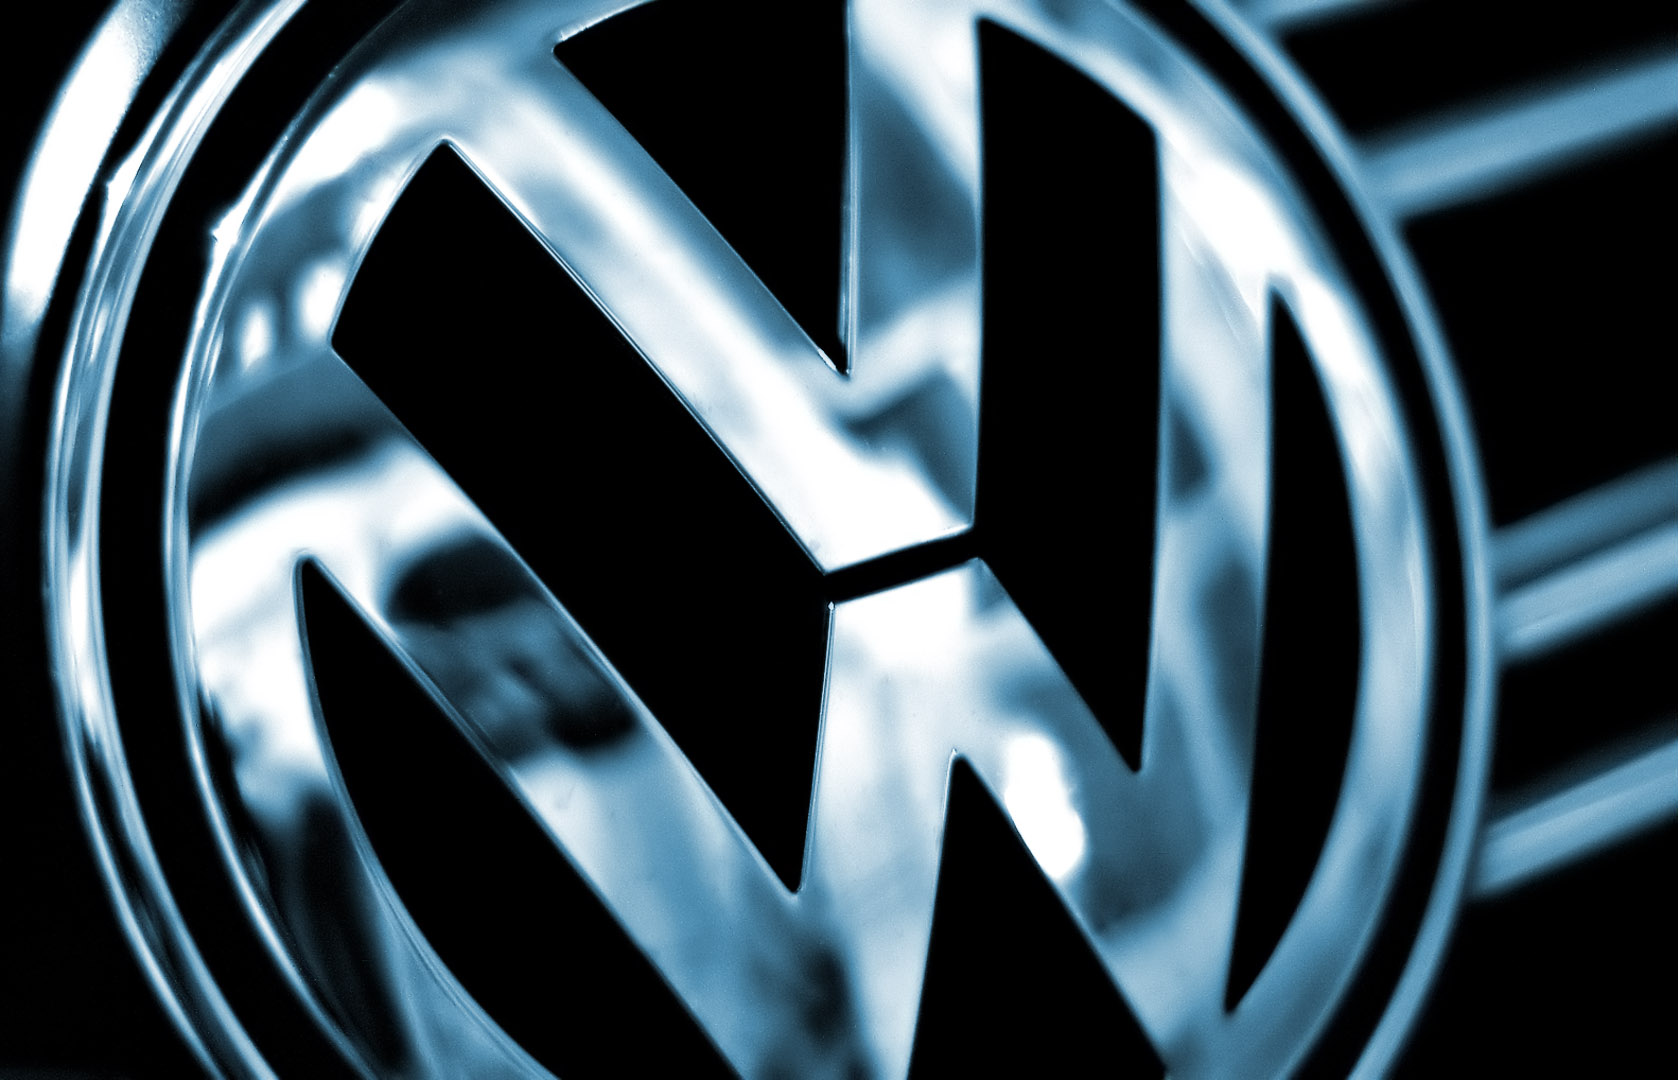 компания Volkswagen подготовила много технических новинок